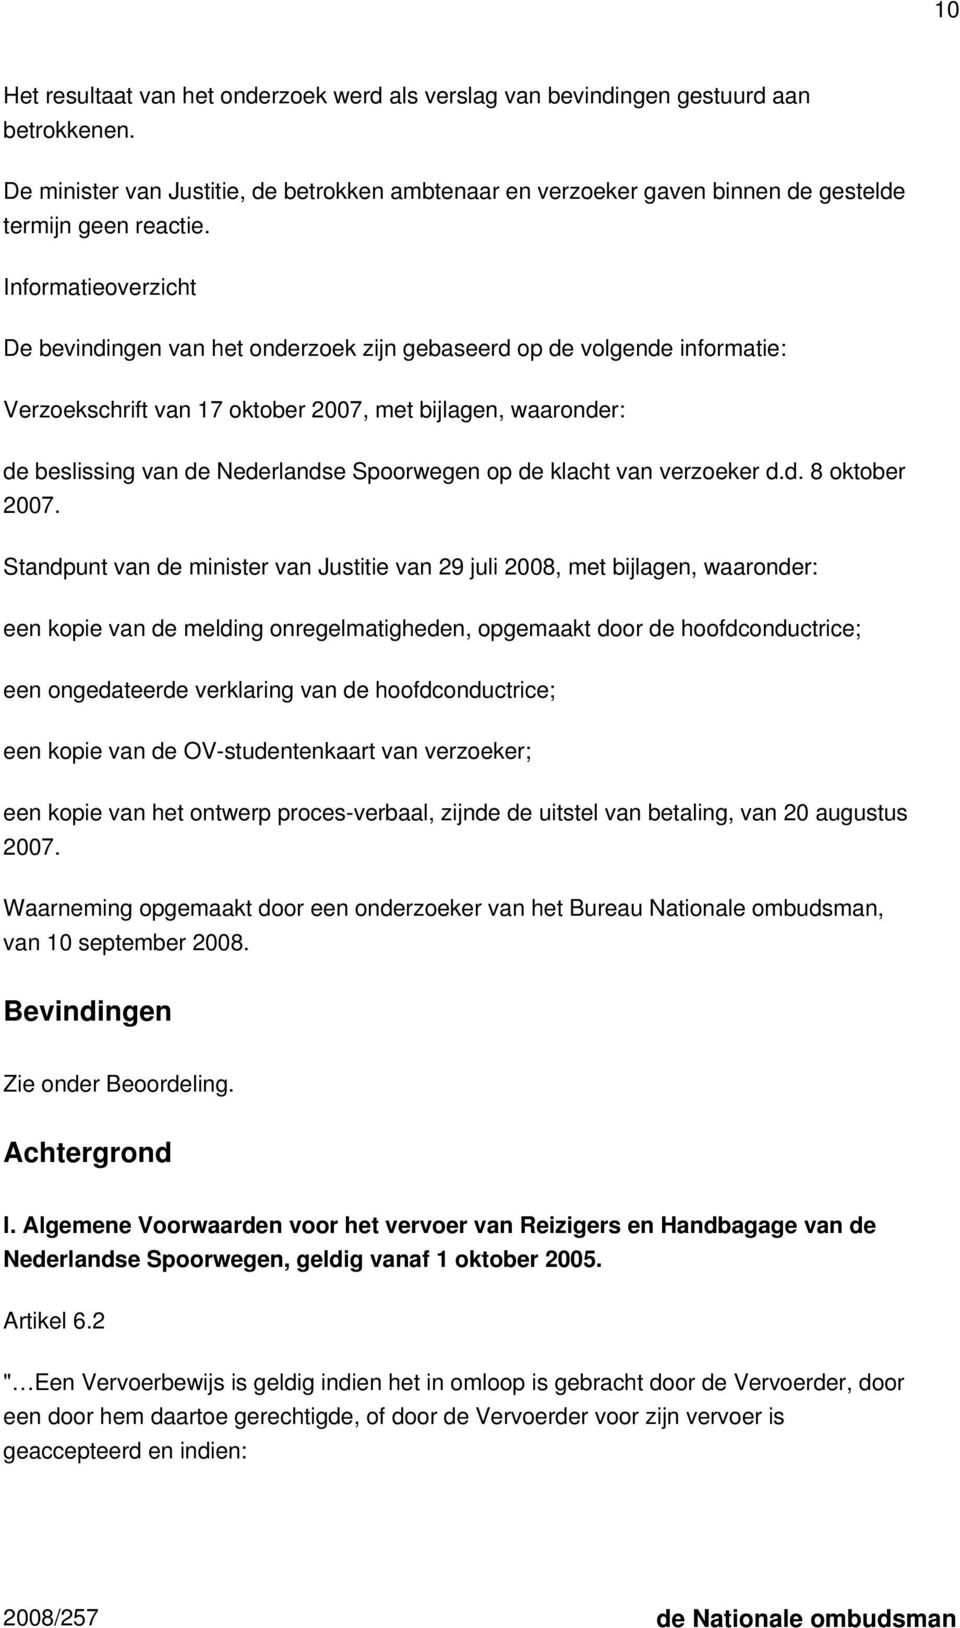 Informatieoverzicht De bevindingen van het onderzoek zijn gebaseerd op de volgende informatie: Verzoekschrift van 17 oktober 2007, met bijlagen, waaronder: de beslissing van de Nederlandse Spoorwegen